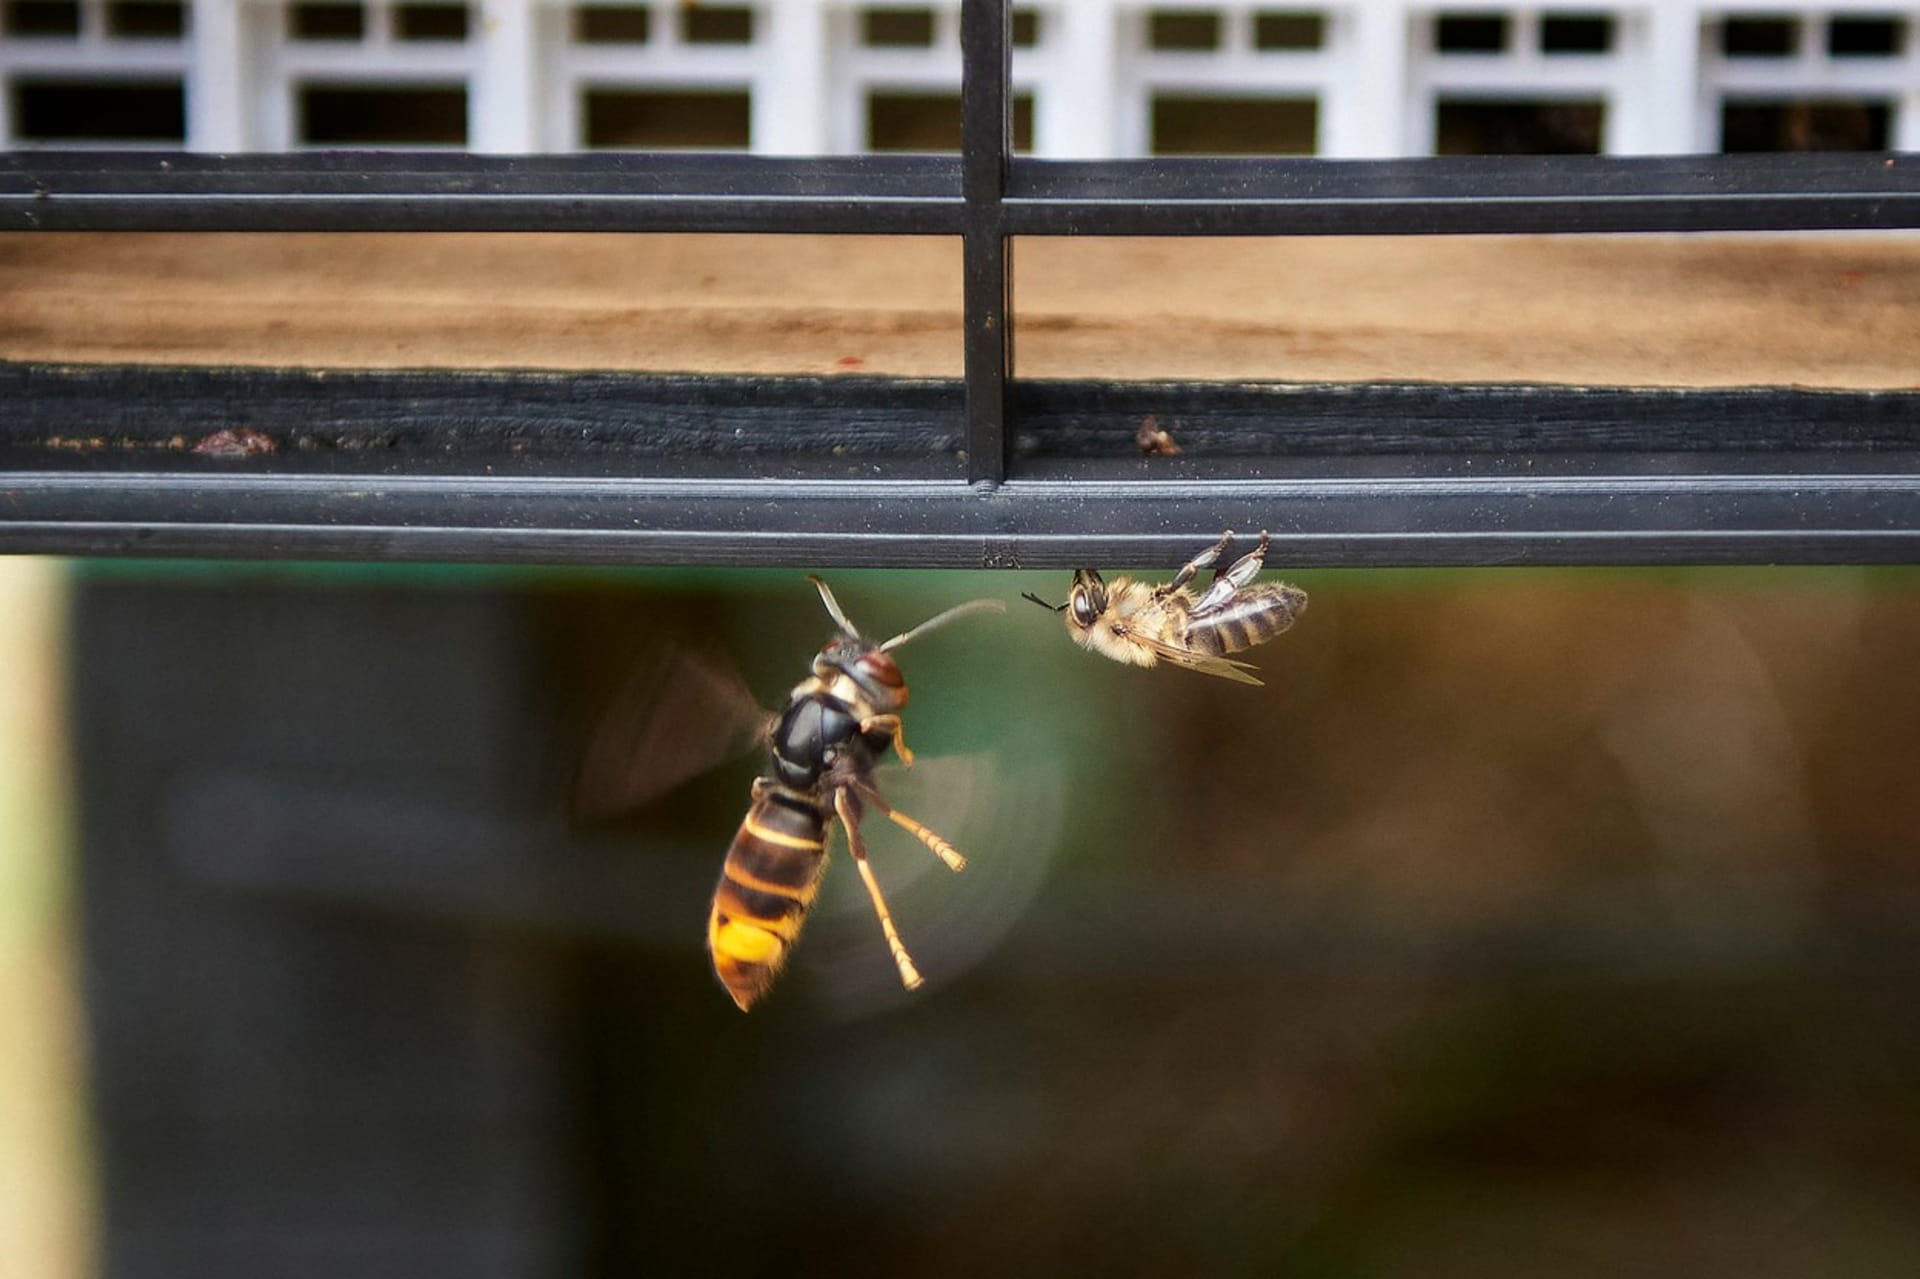 Sršeň asijská se chystá napadnout včelu na okraji úlu